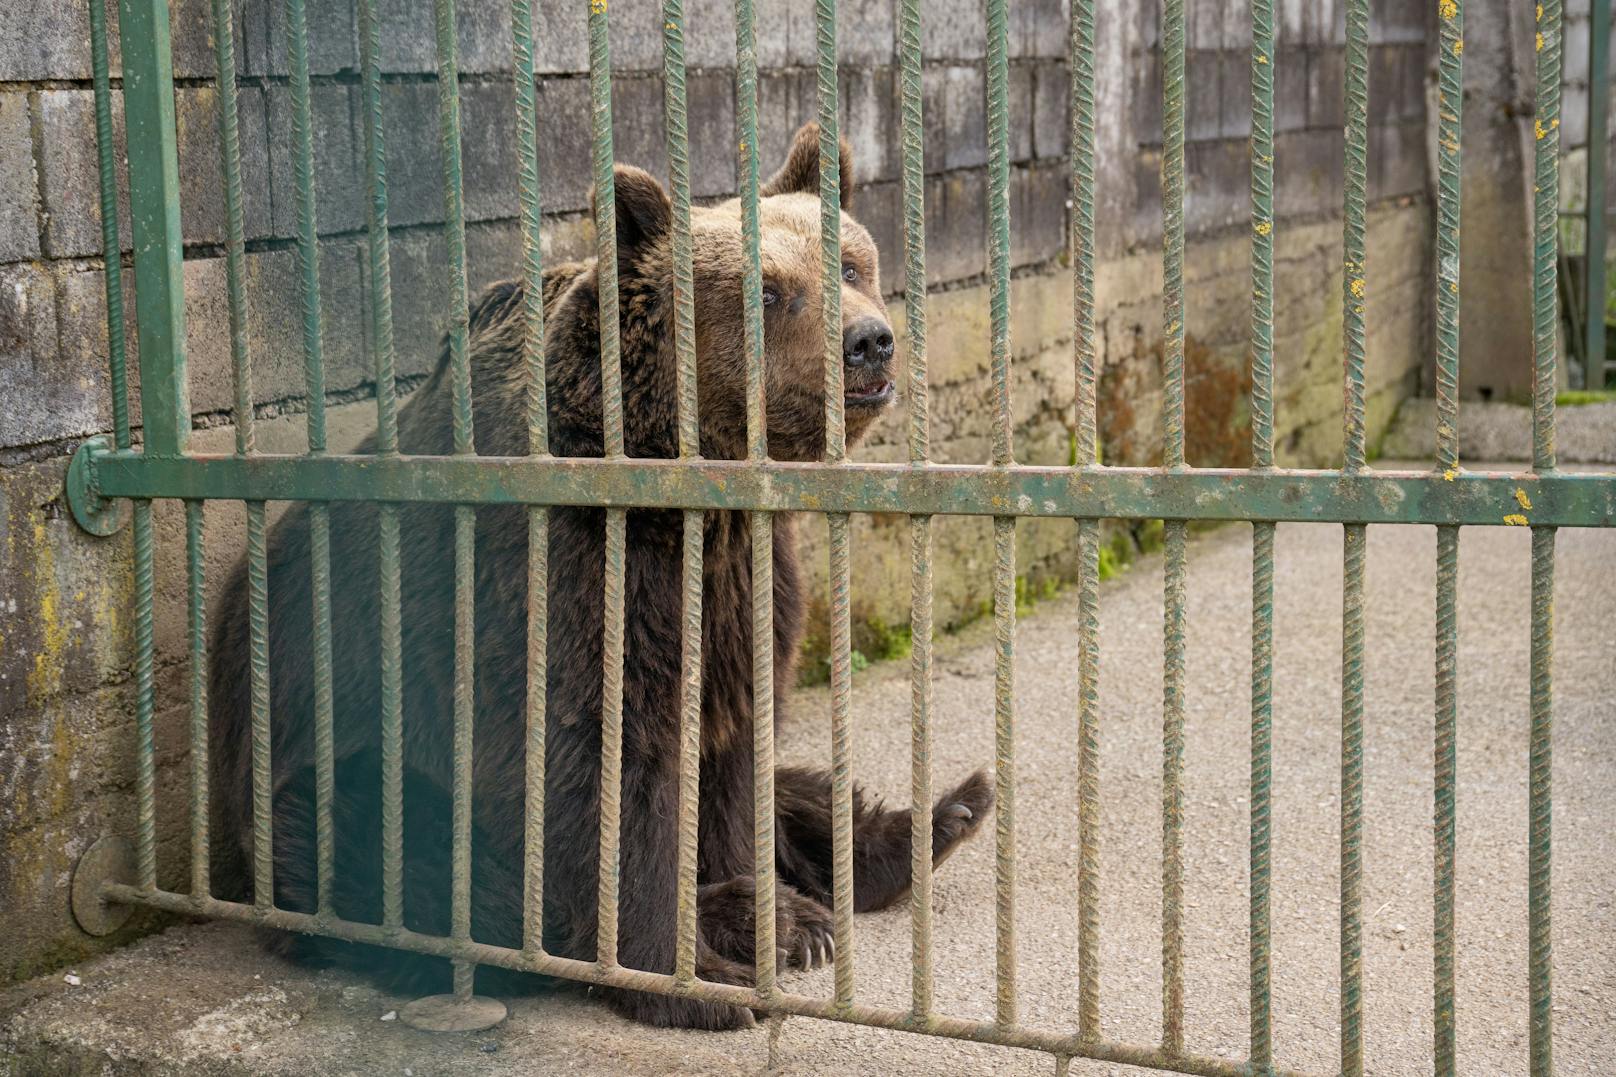 Untersuchung der Haltung der Bären Felix und Mascha - Gostilna Tusek in Kocevje. Felix starb kurz nach den Aufnahmen.